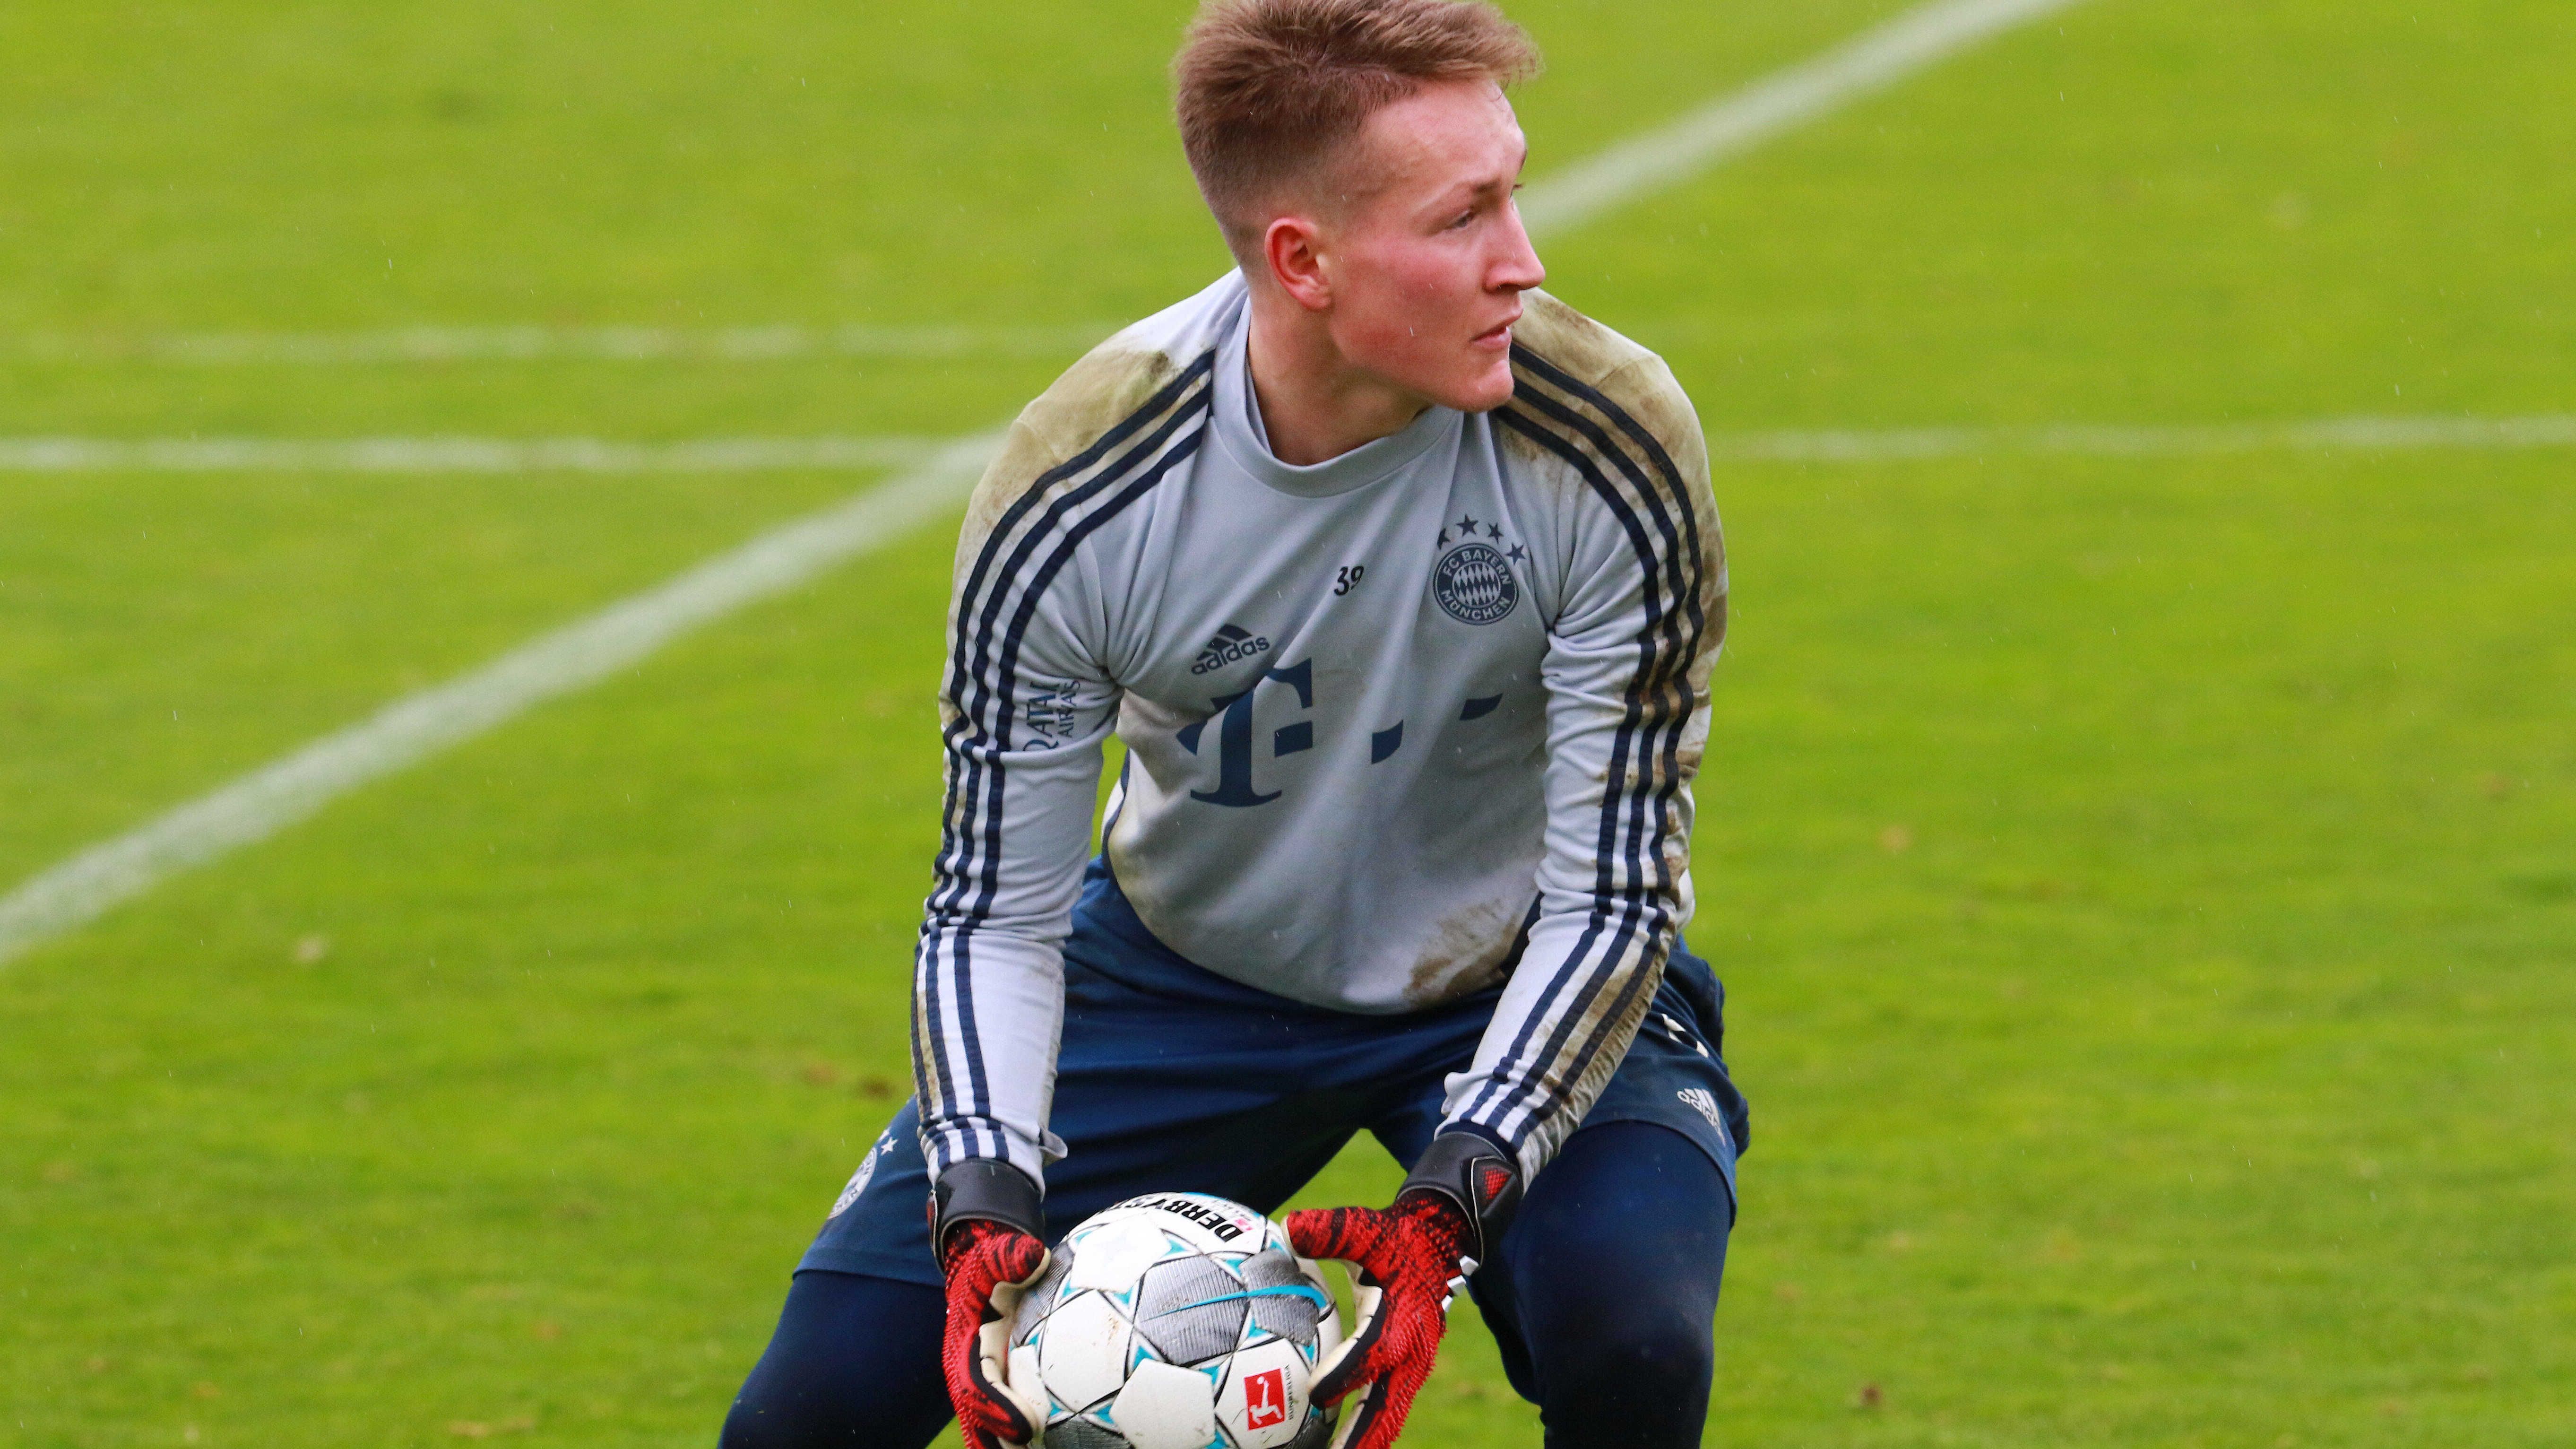 
                <strong>Ron-Thorben Hoffmann</strong><br>
                In der laufenden Spielzeit ist der 21-Jährige hinter Neuer, Ulreich und Christian Früchtl die Nummer vier. Mit der Verpflichtung von Nübel verbessern sich seine Chancen nicht wirklich. Um regelmäßig Spielzeit zu erhalten, außerhalb von Einsätzen bei Bayerns U23 in der dritten Liga, hilft wohl nur ein Wechsel oder eine Leihe. 
              